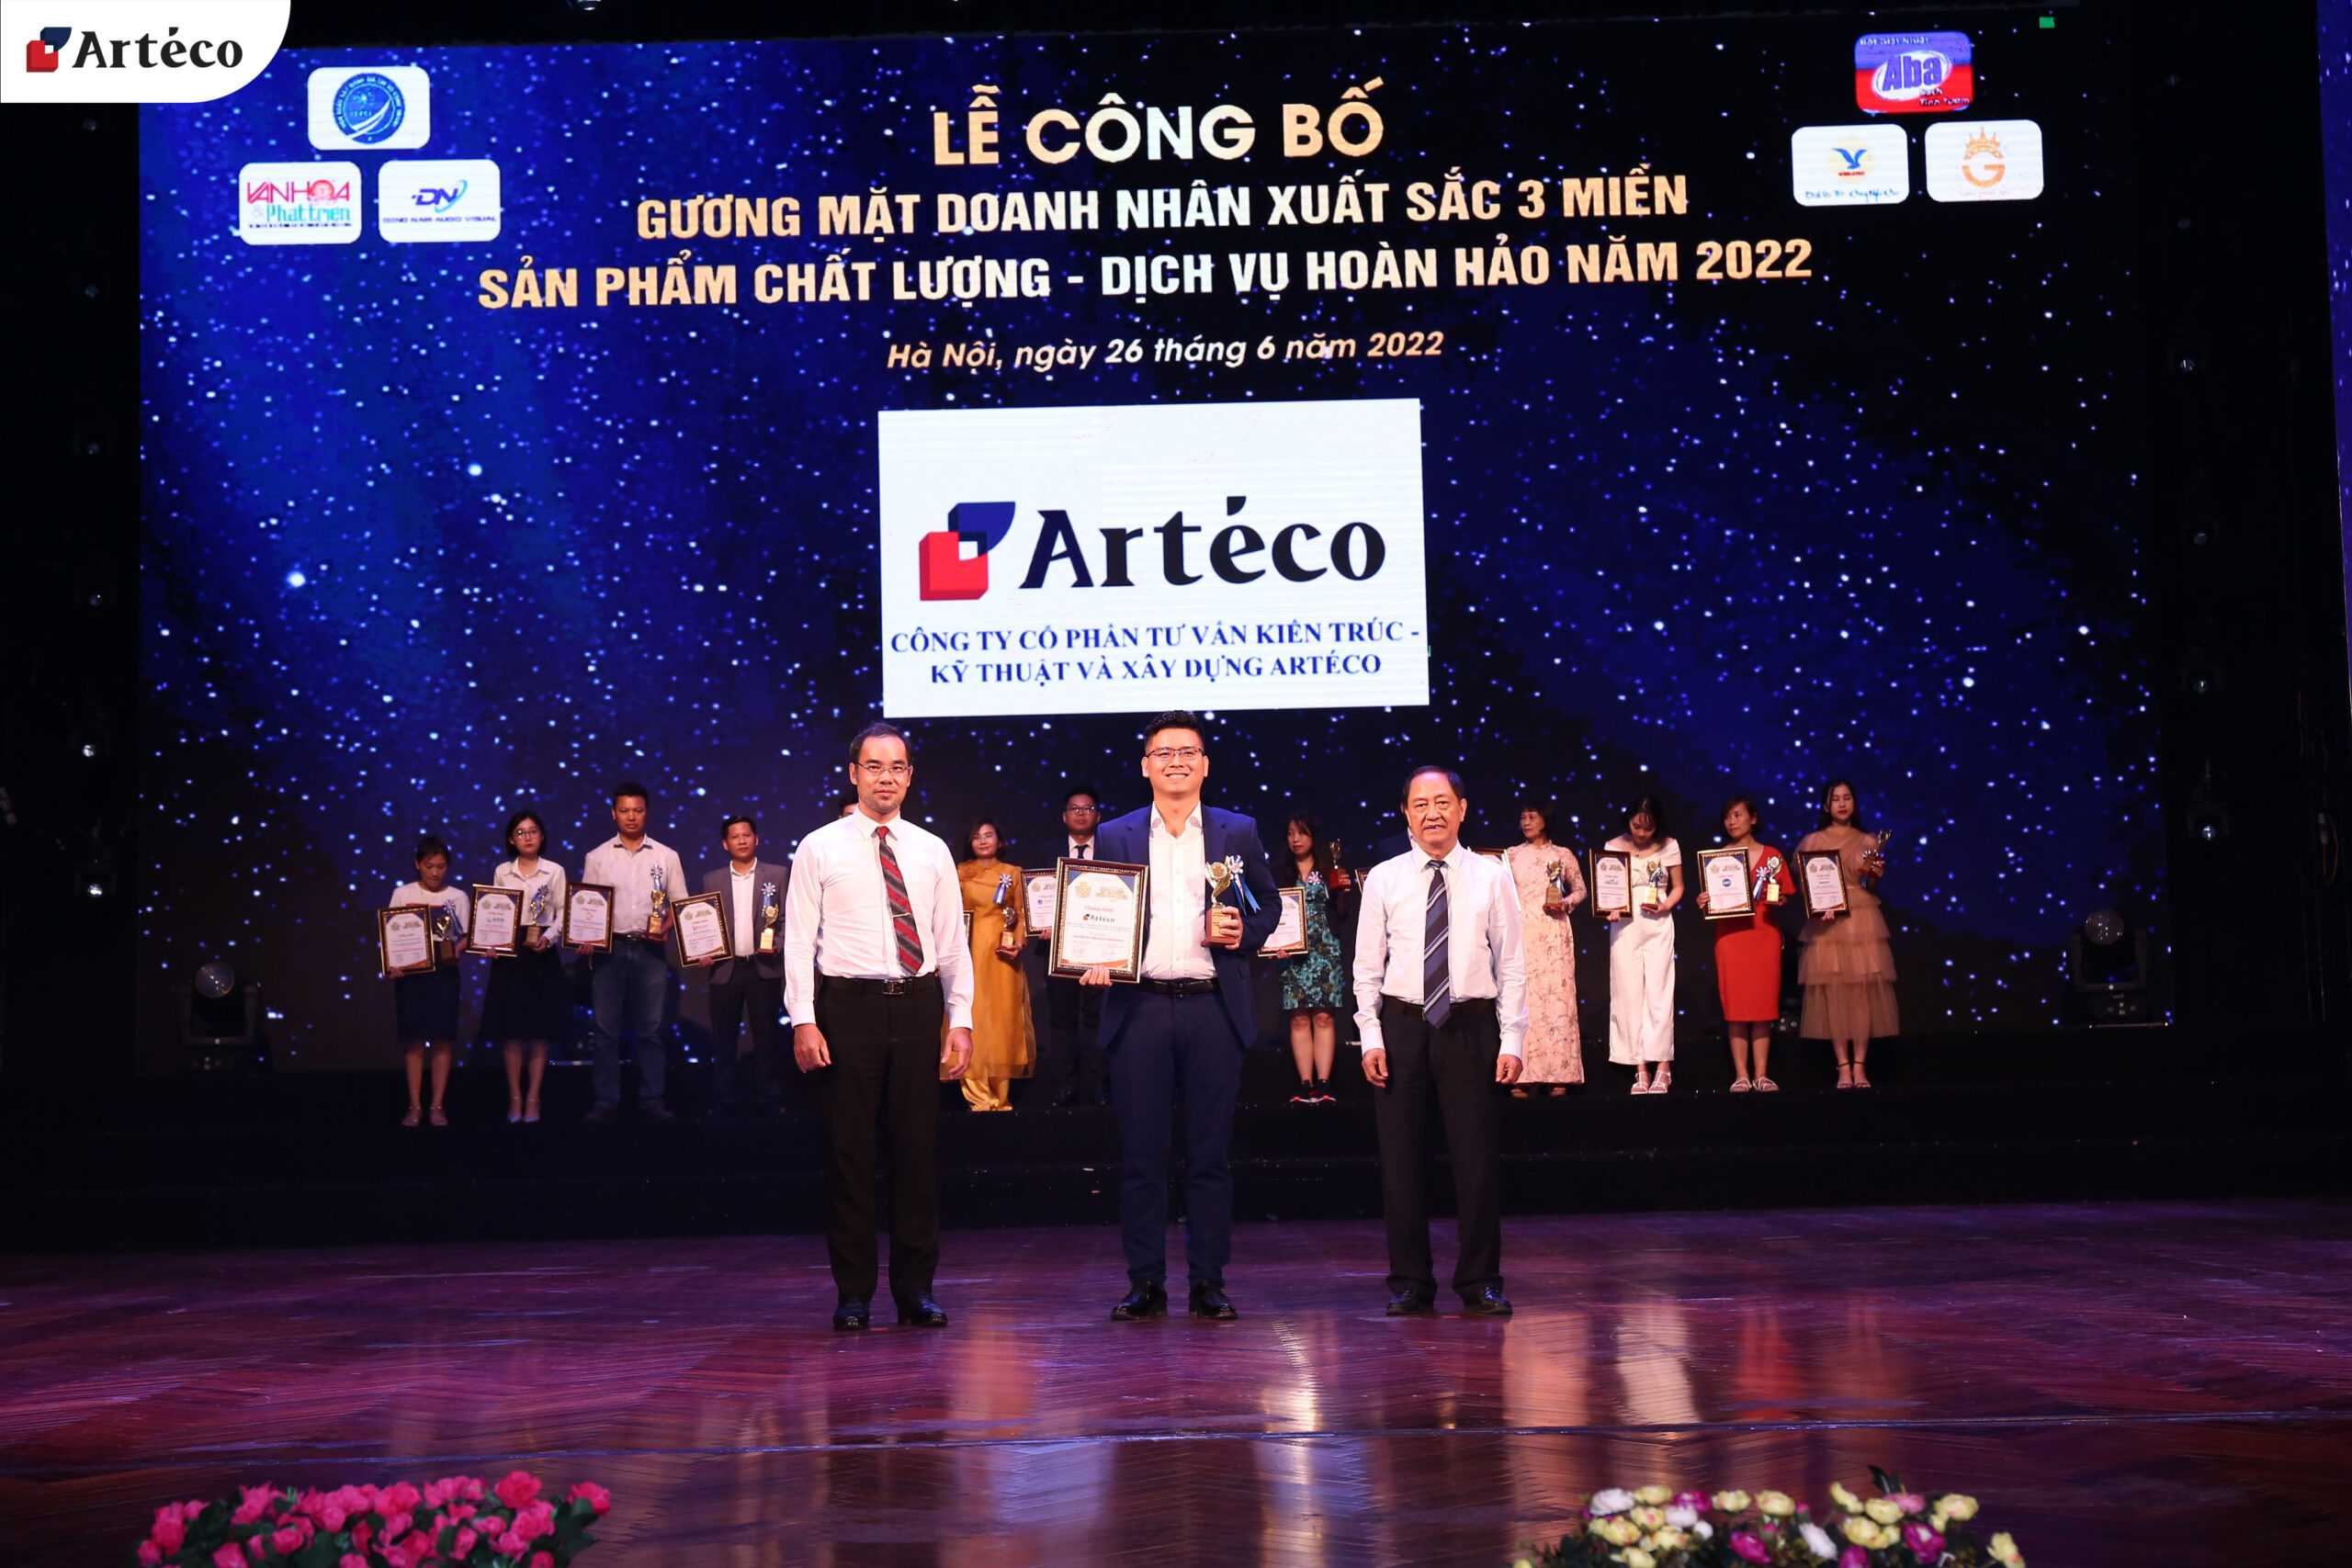 Arteco - A reçu le prix "PRODUITS DE QUALITÉ, SERVICE PARFAIT 2022"